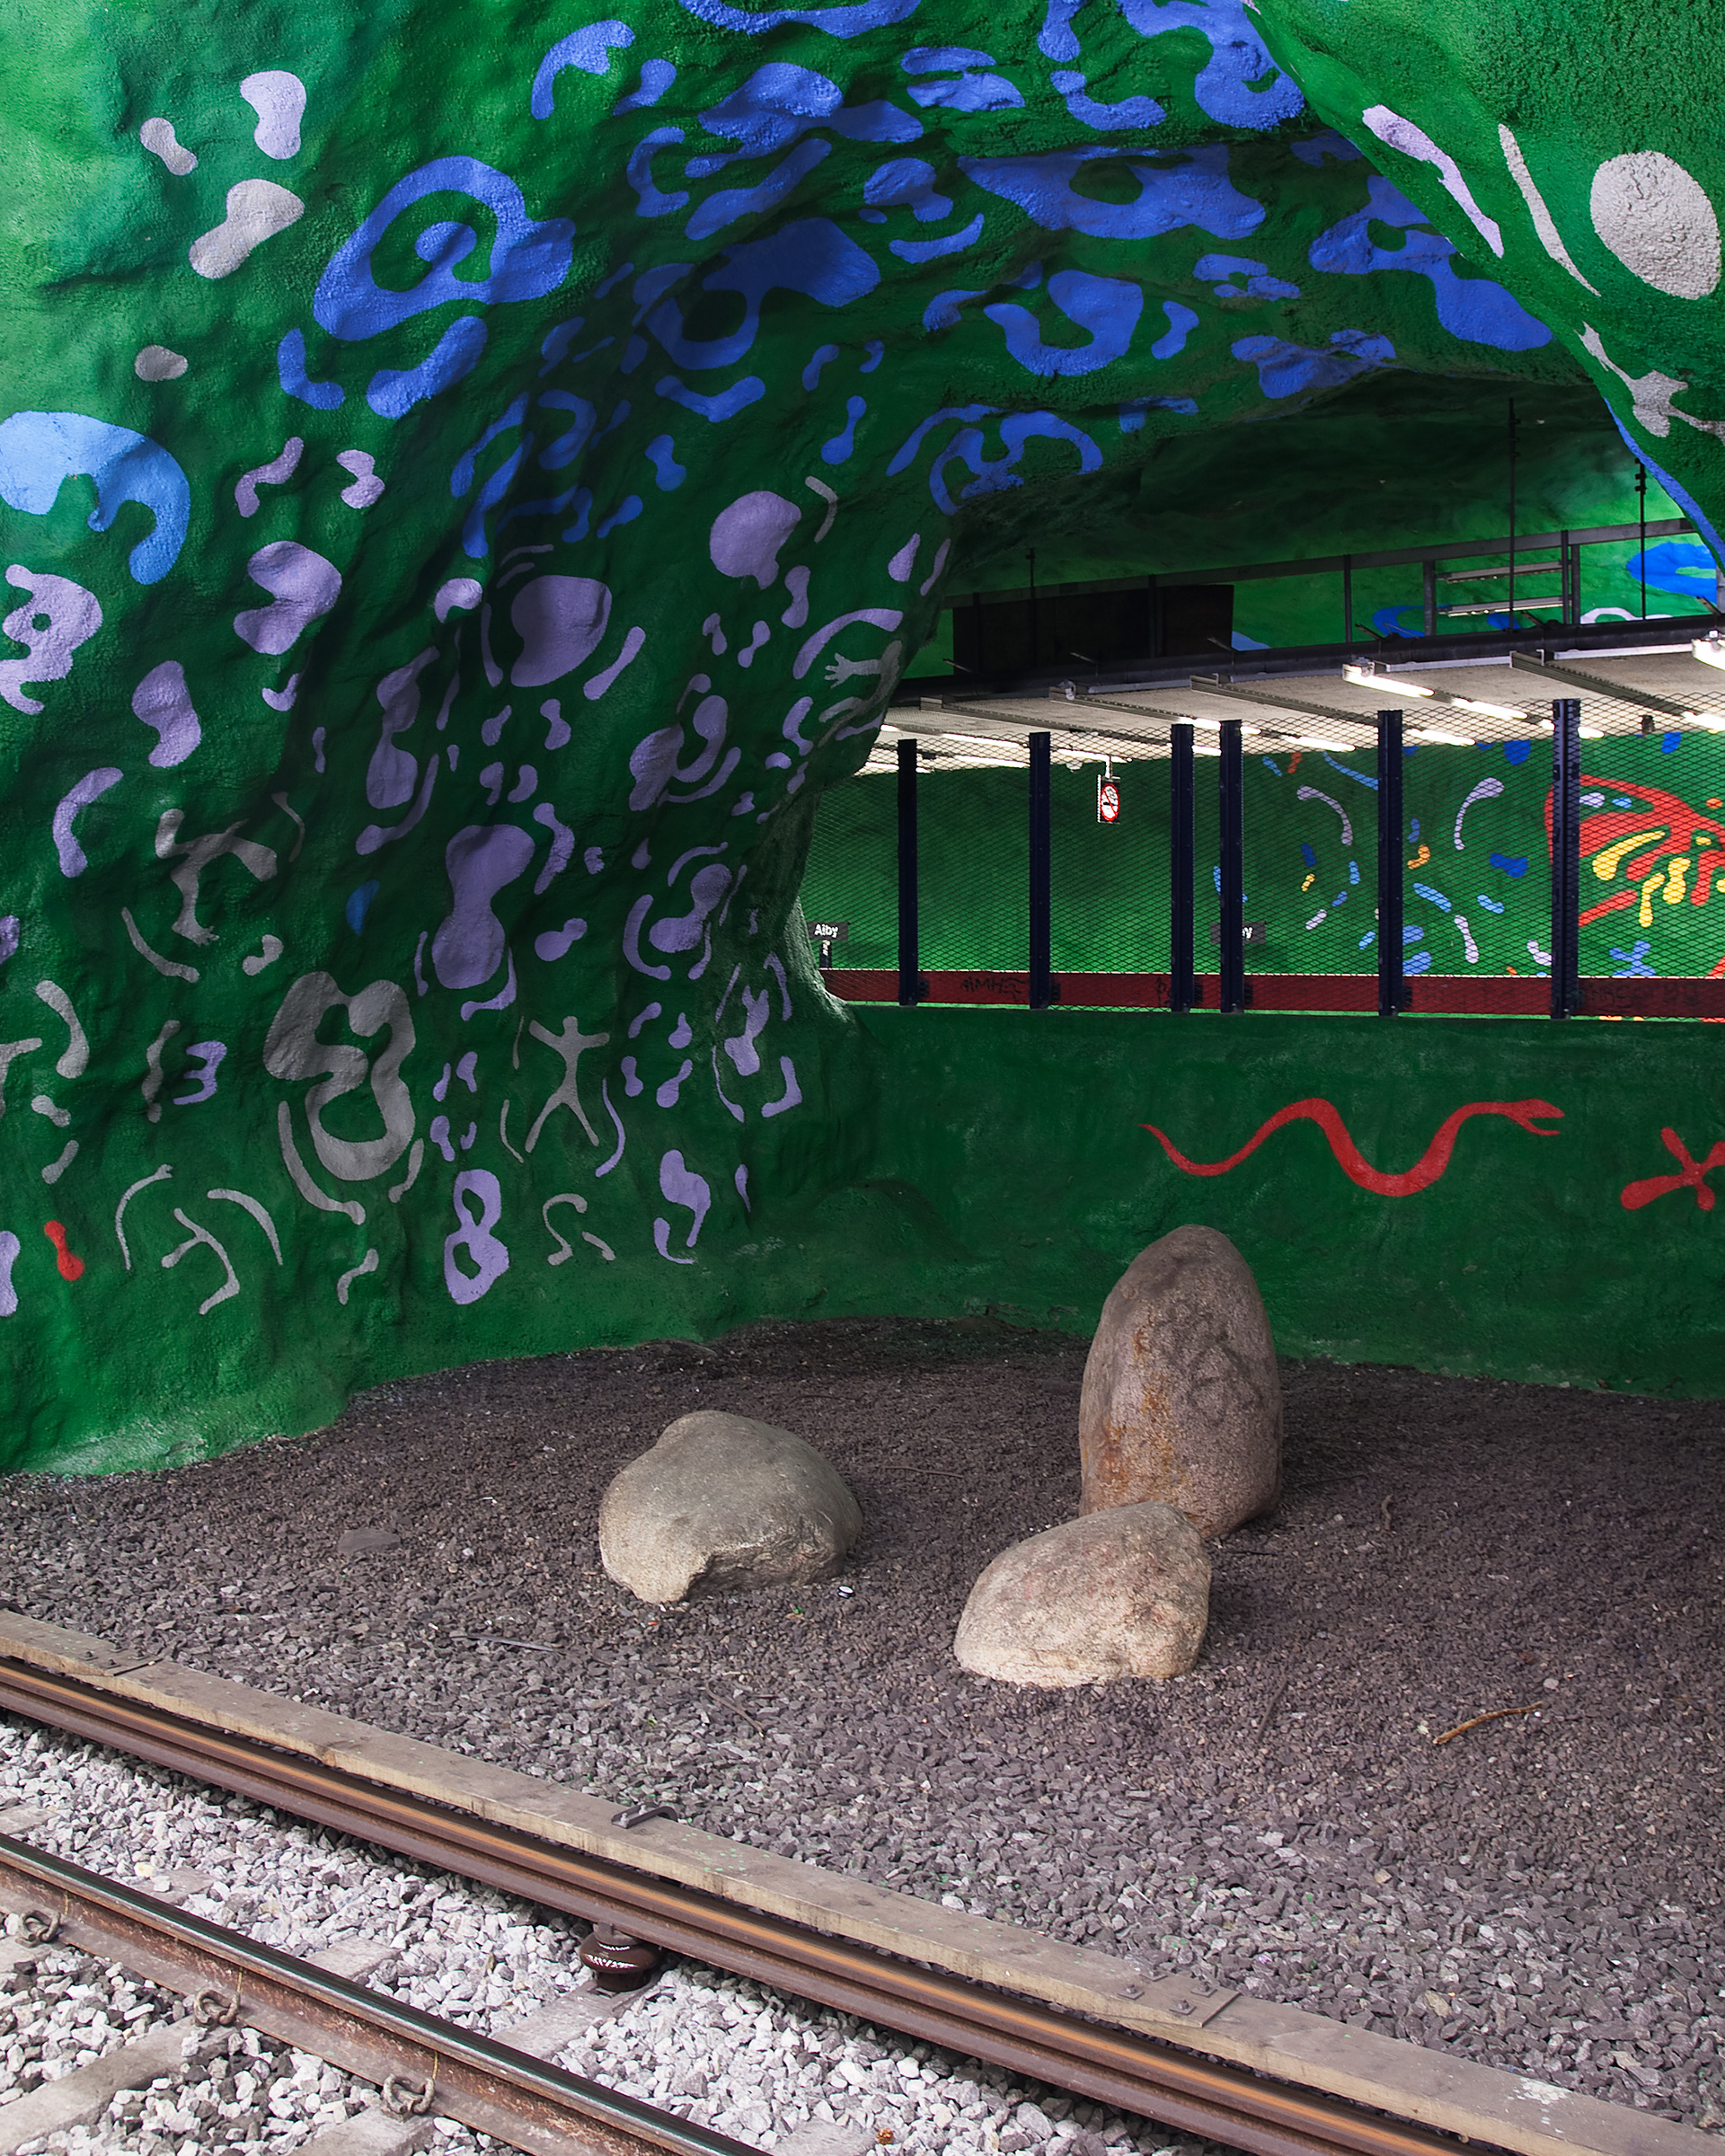 Målade väggar som i en grotta. Blått mönster på grön botten. På marken en räls, grus och stenar.